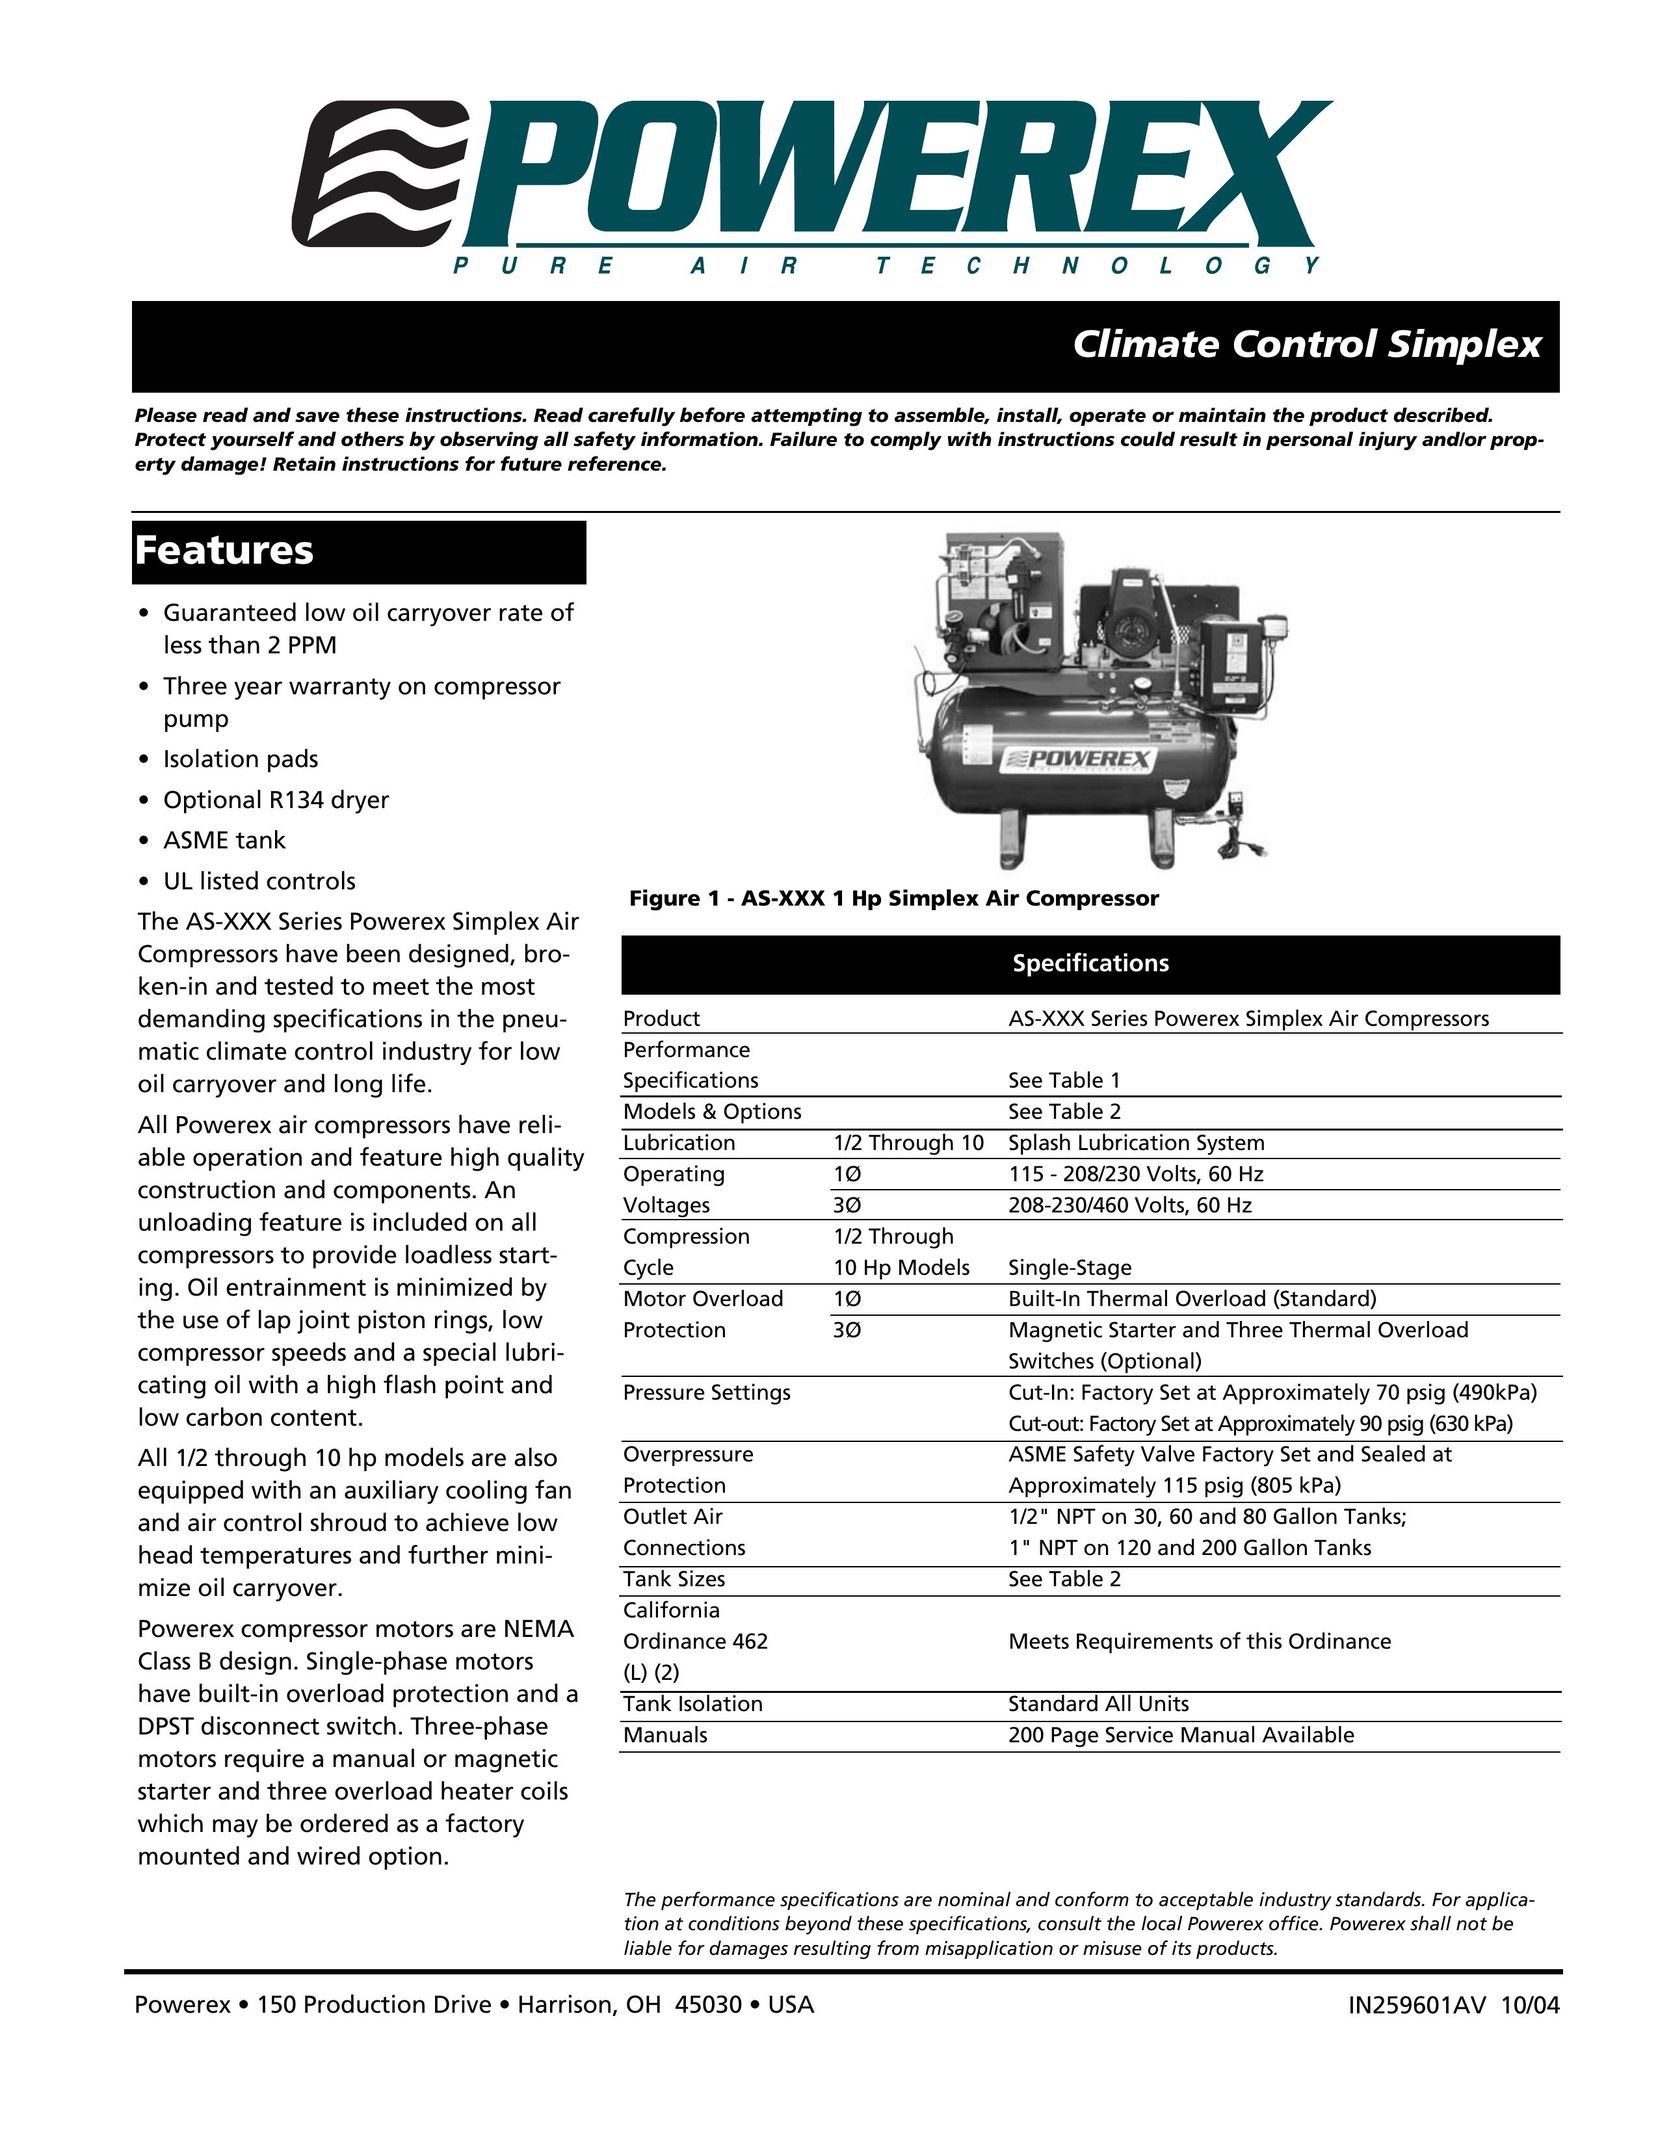 Powerex AS-XXX Air Compressor User Manual